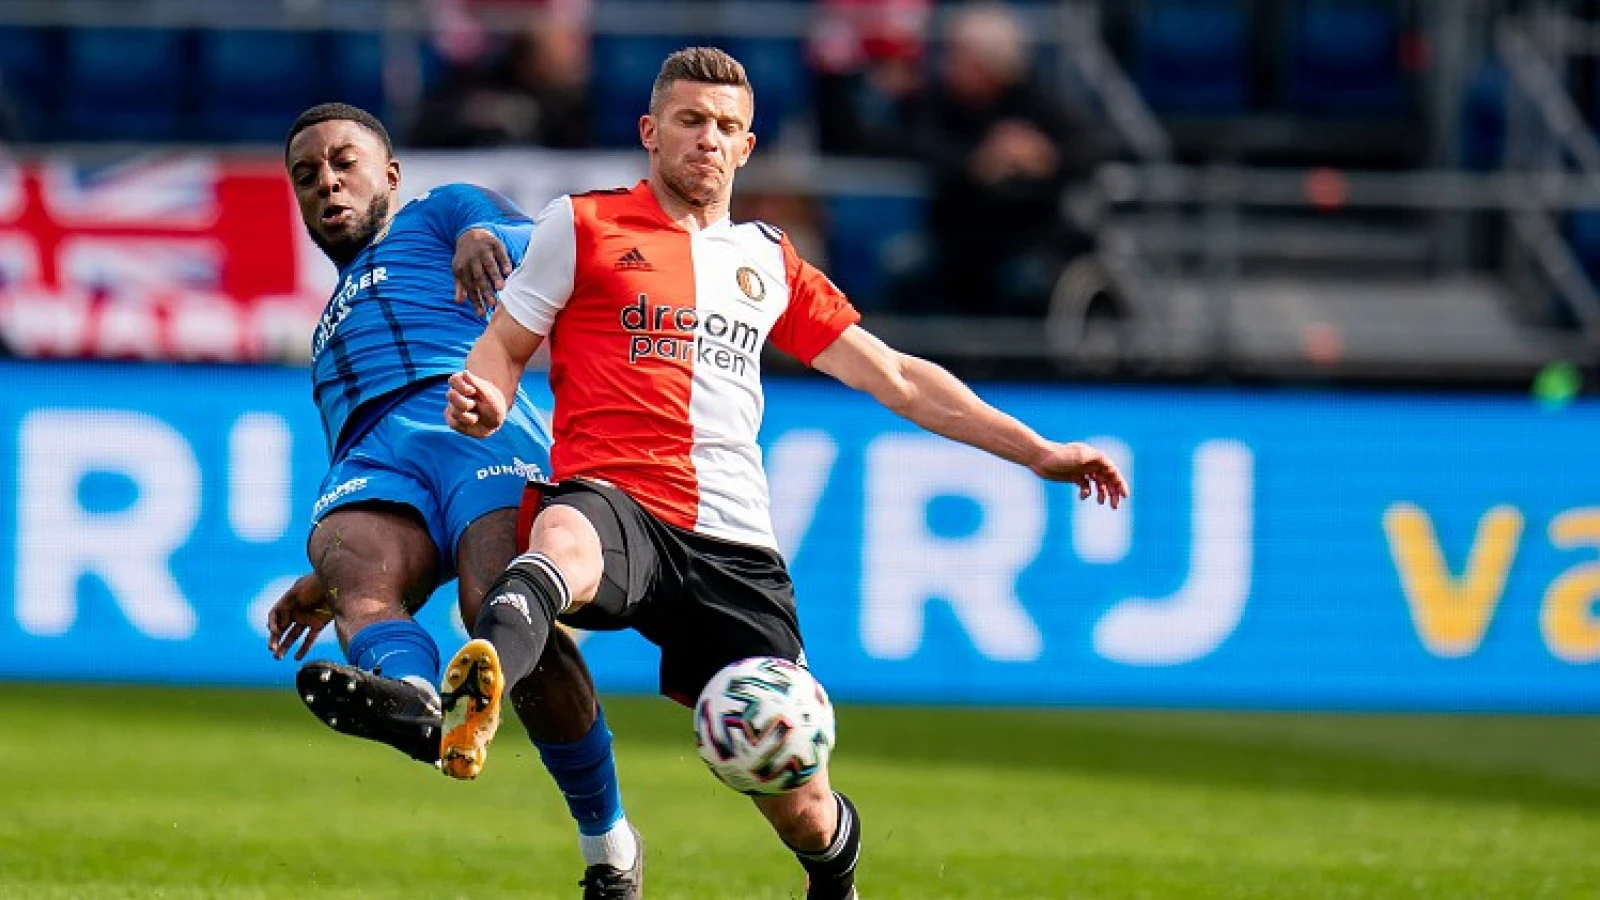 'Sterspeler Vitesse vraagteken voor duel met Feyenoord'